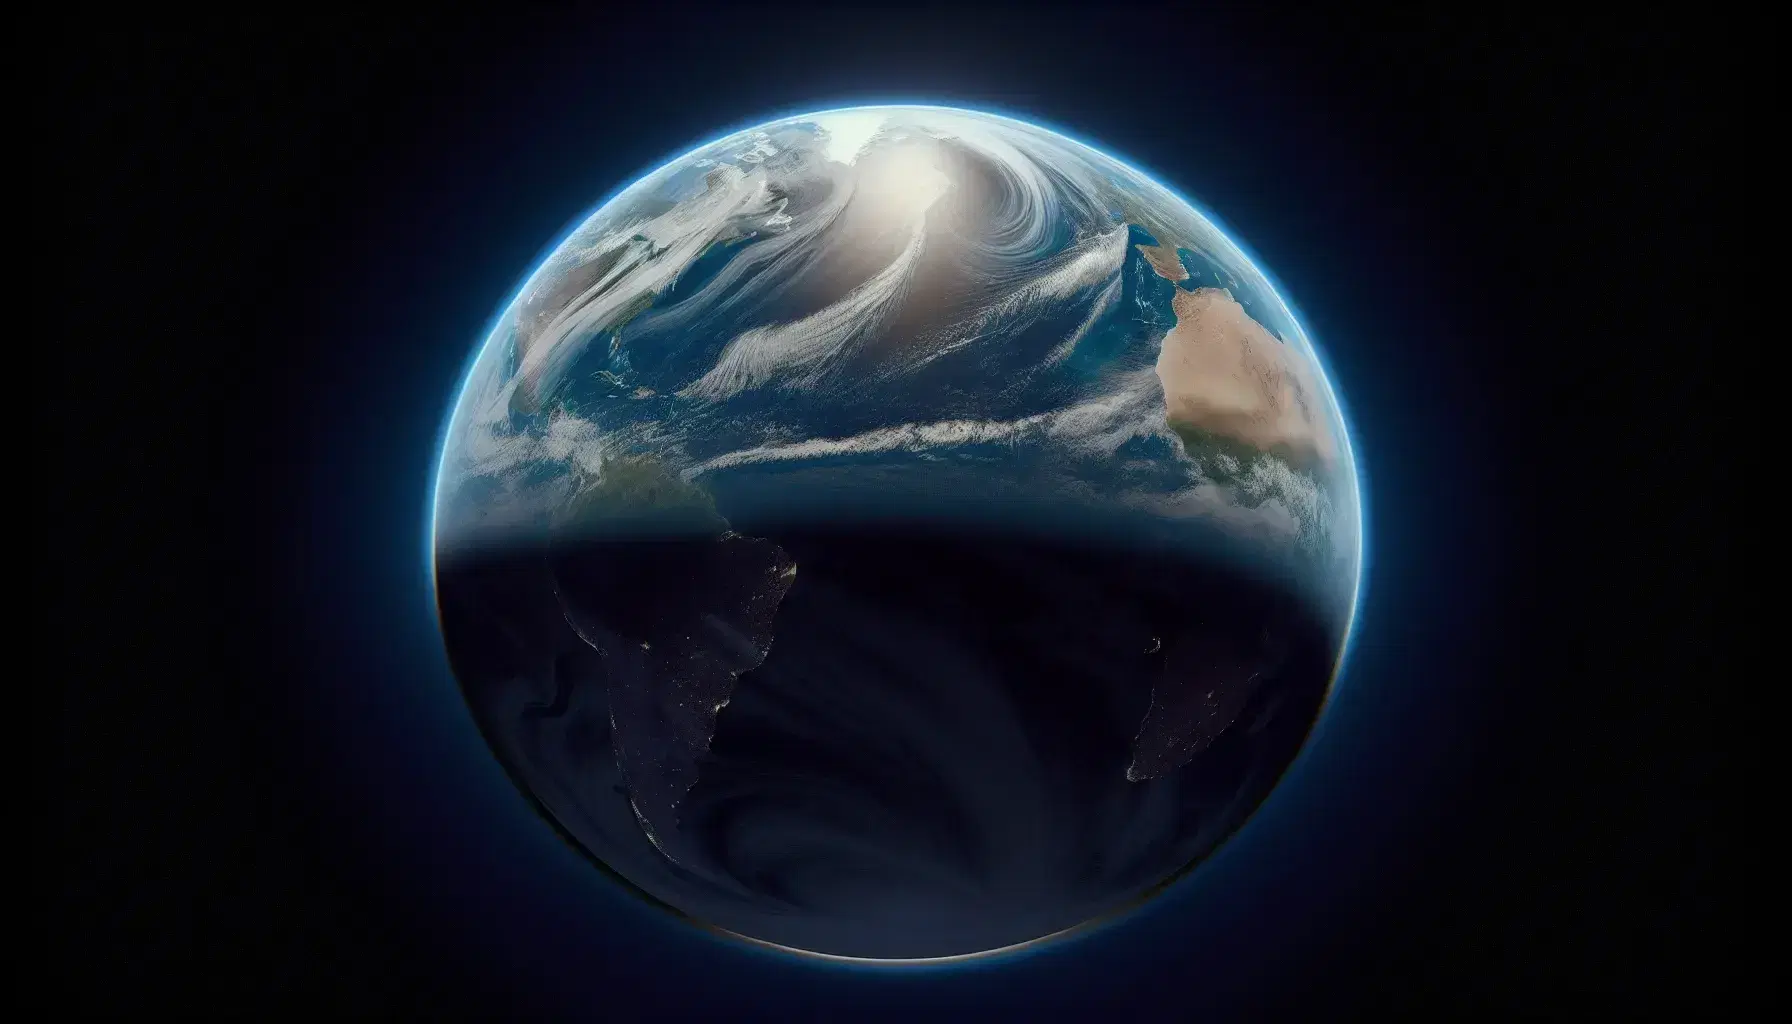 Vista panorámica de la Tierra desde el espacio con atmósfera azulada, superficie terrestre y sin nubes ni actividad humana visible.